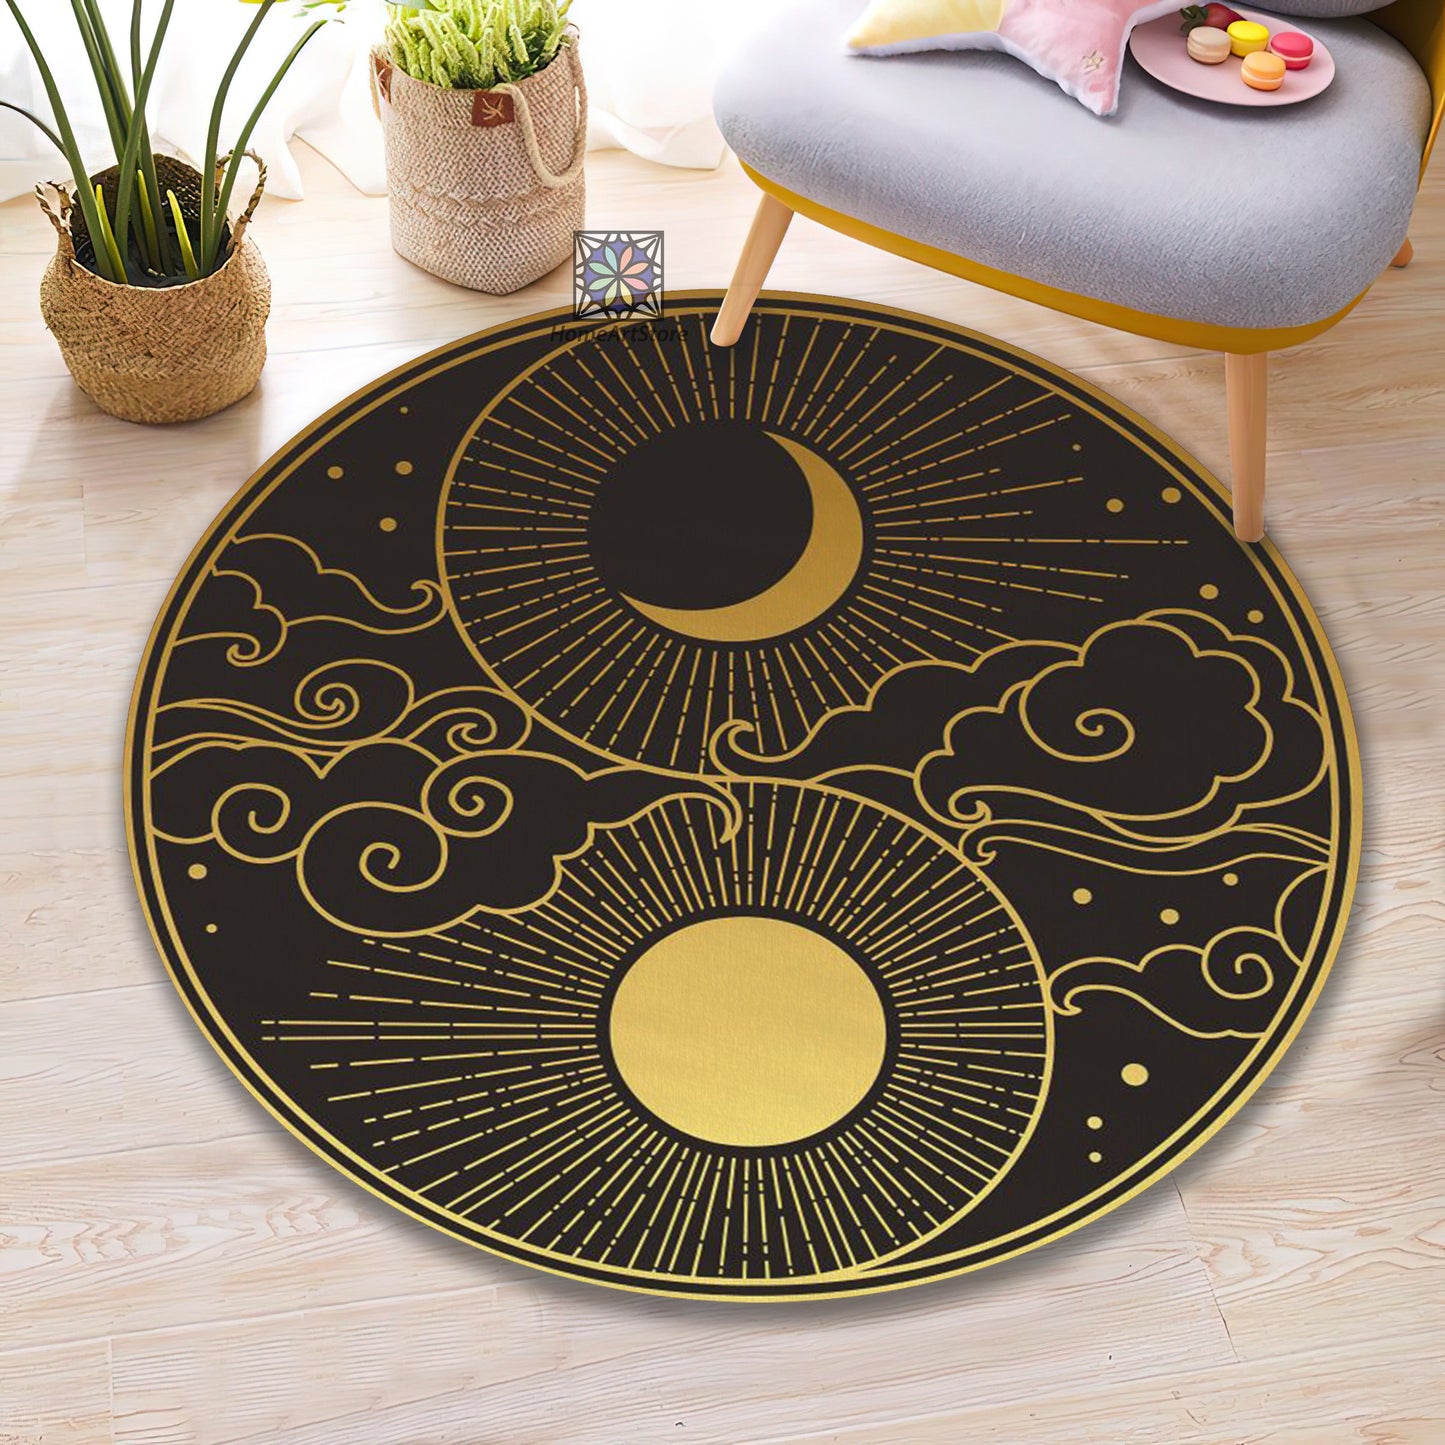 Yin Yang Rug, Yoga Mat, Sun and Moon Themed Carpet, Meditation Decor